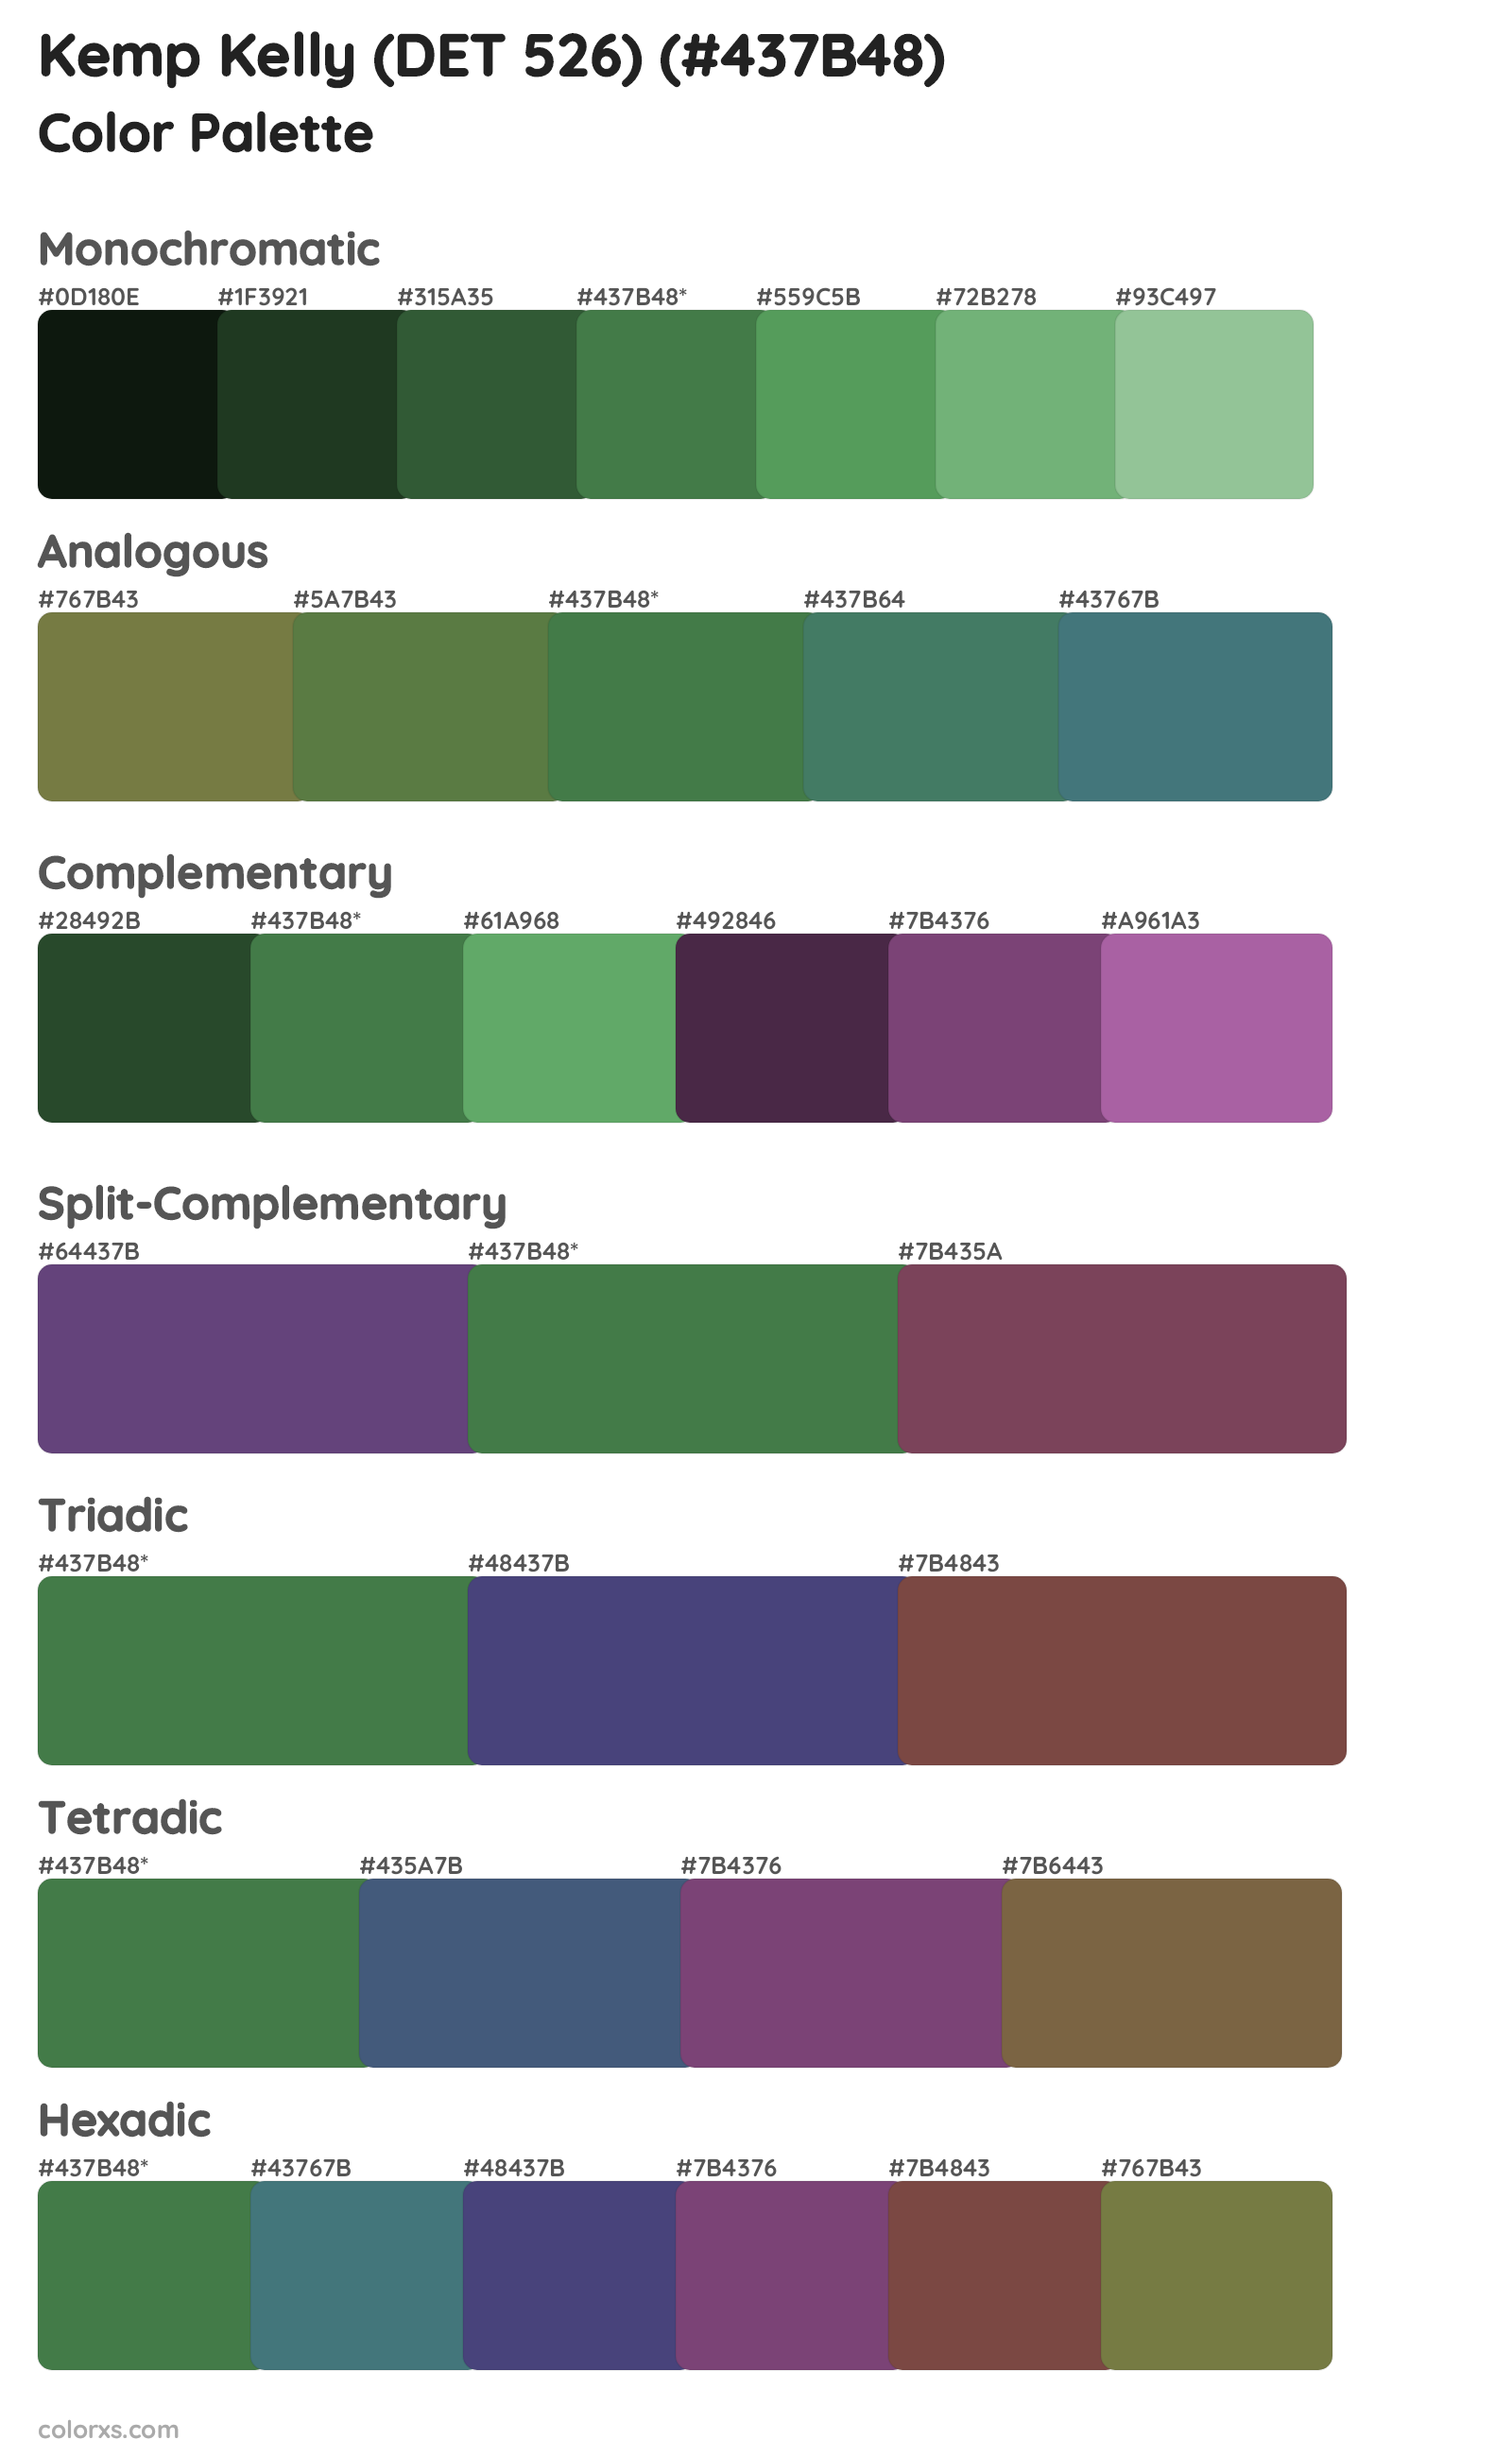 Kemp Kelly (DET 526) Color Scheme Palettes